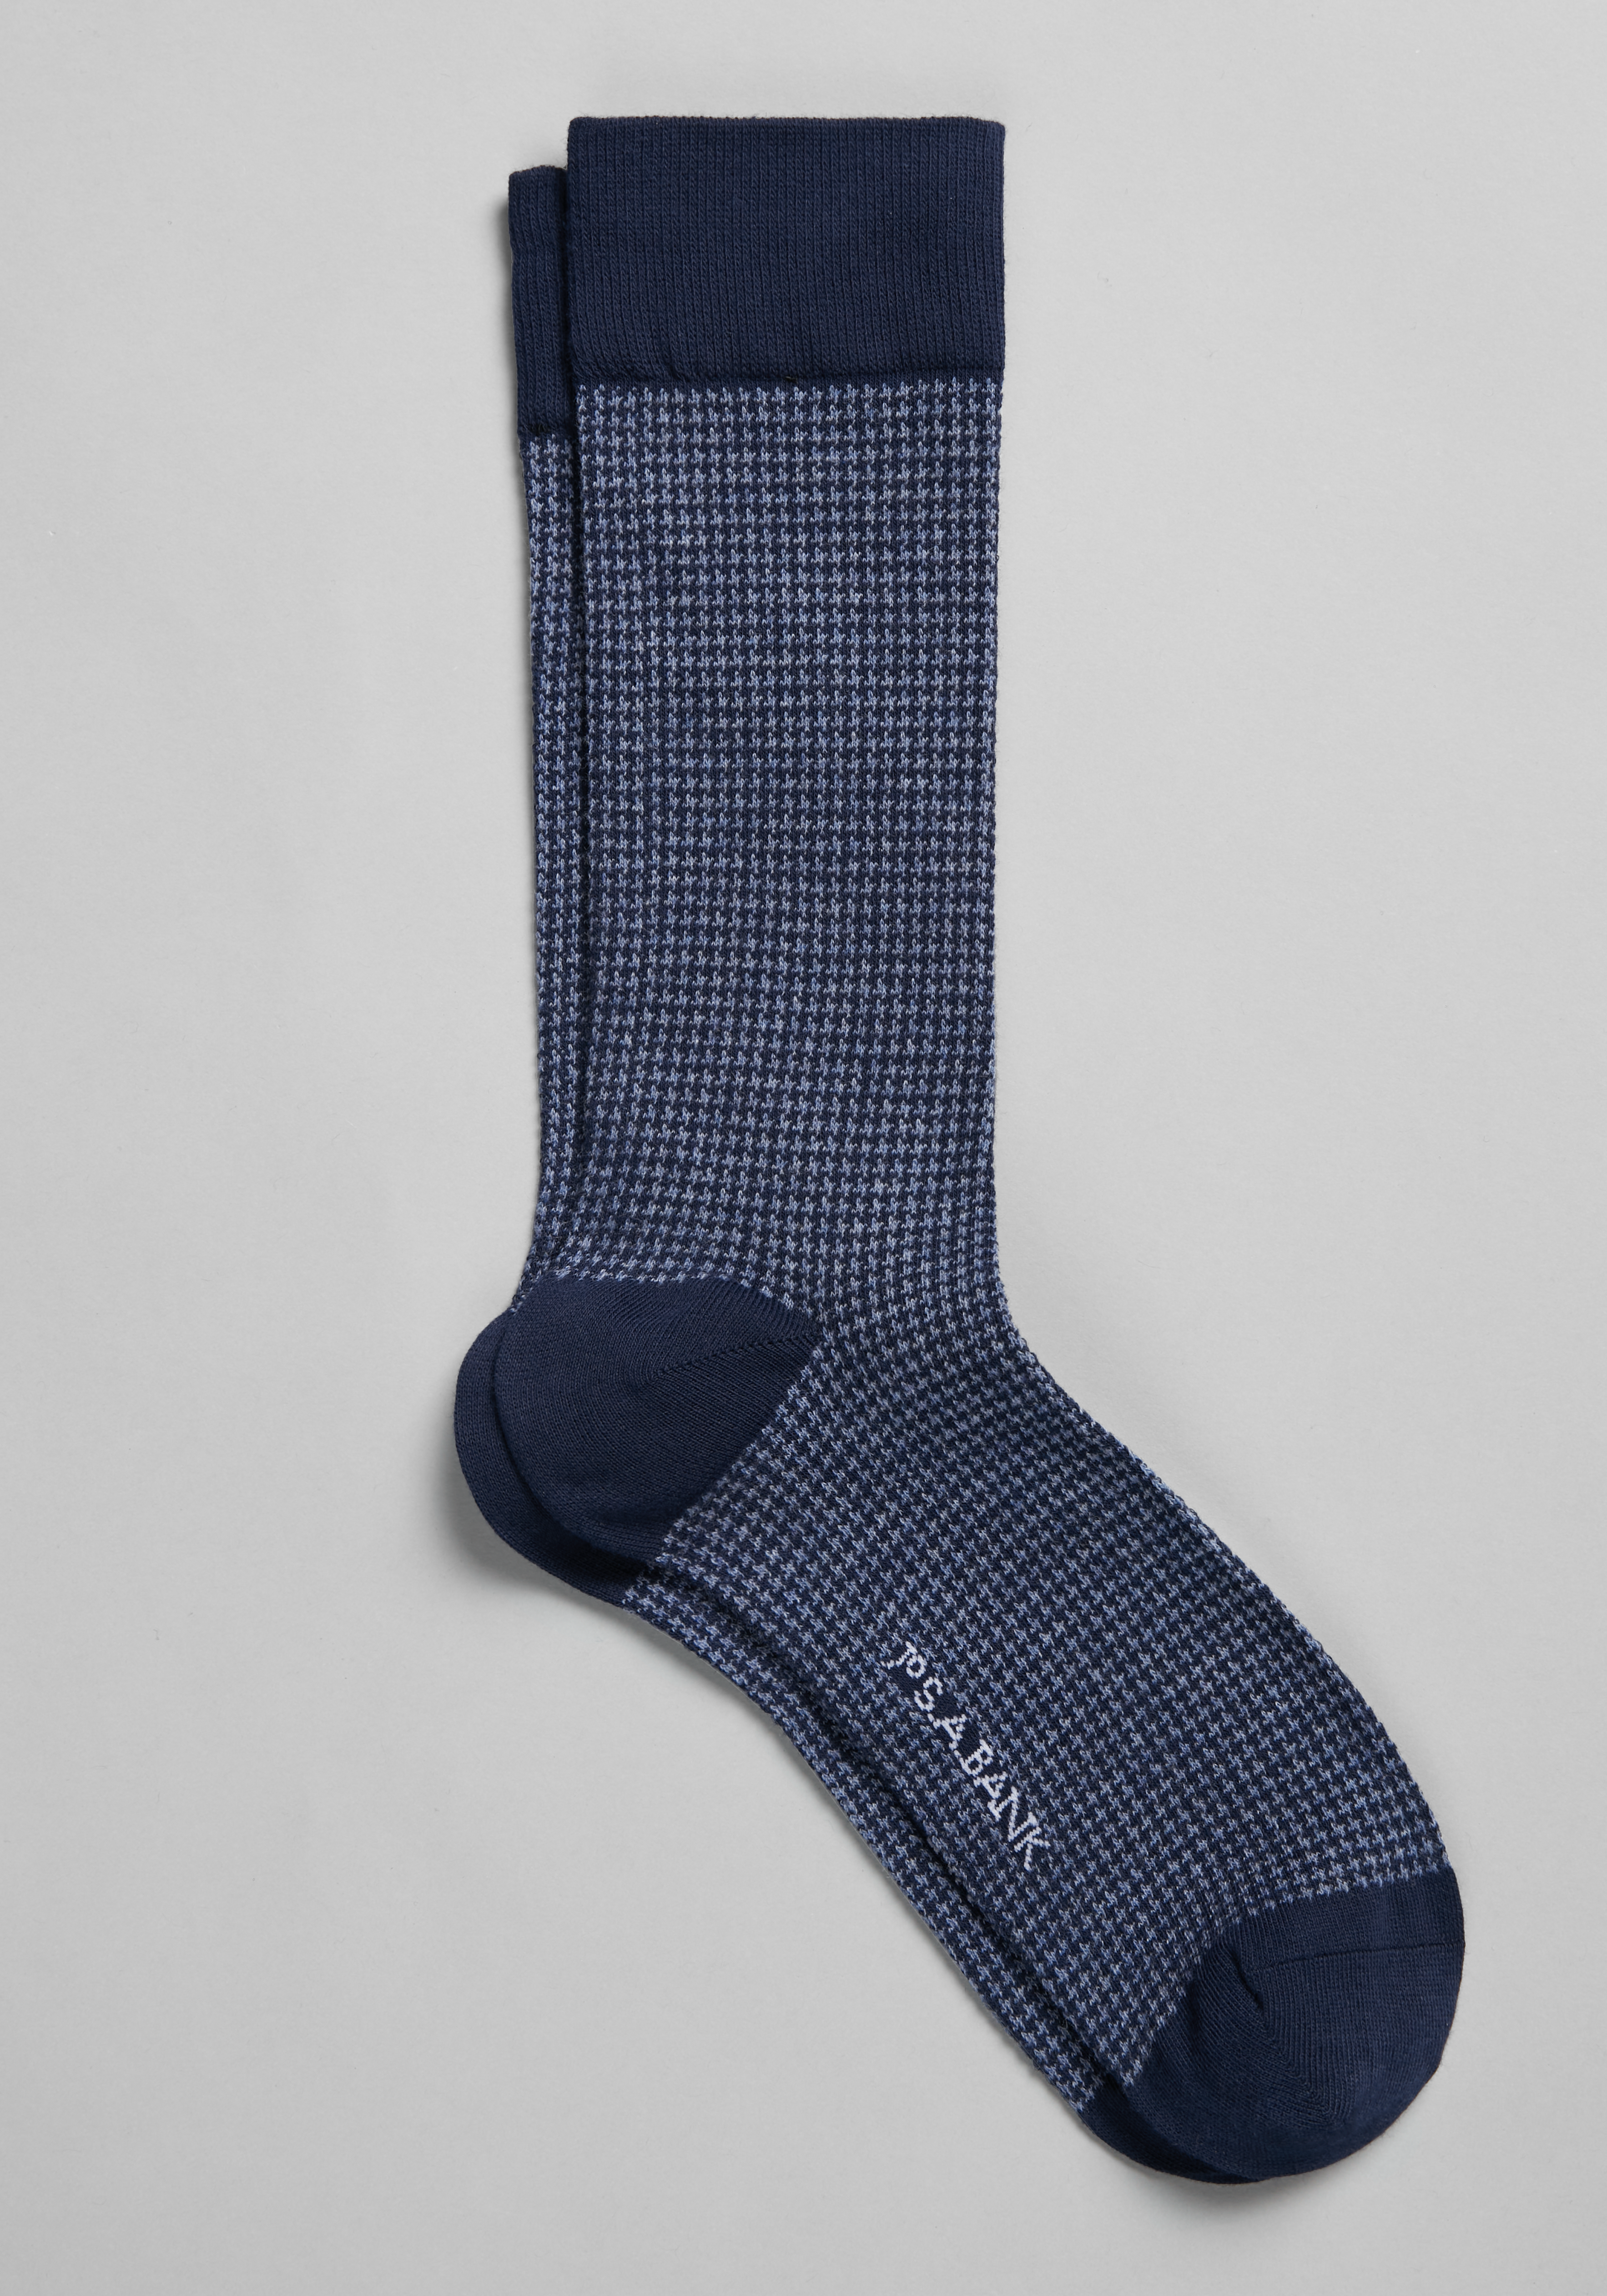  Cole Haan Men's Dress Socks - Patterned Crew Socks